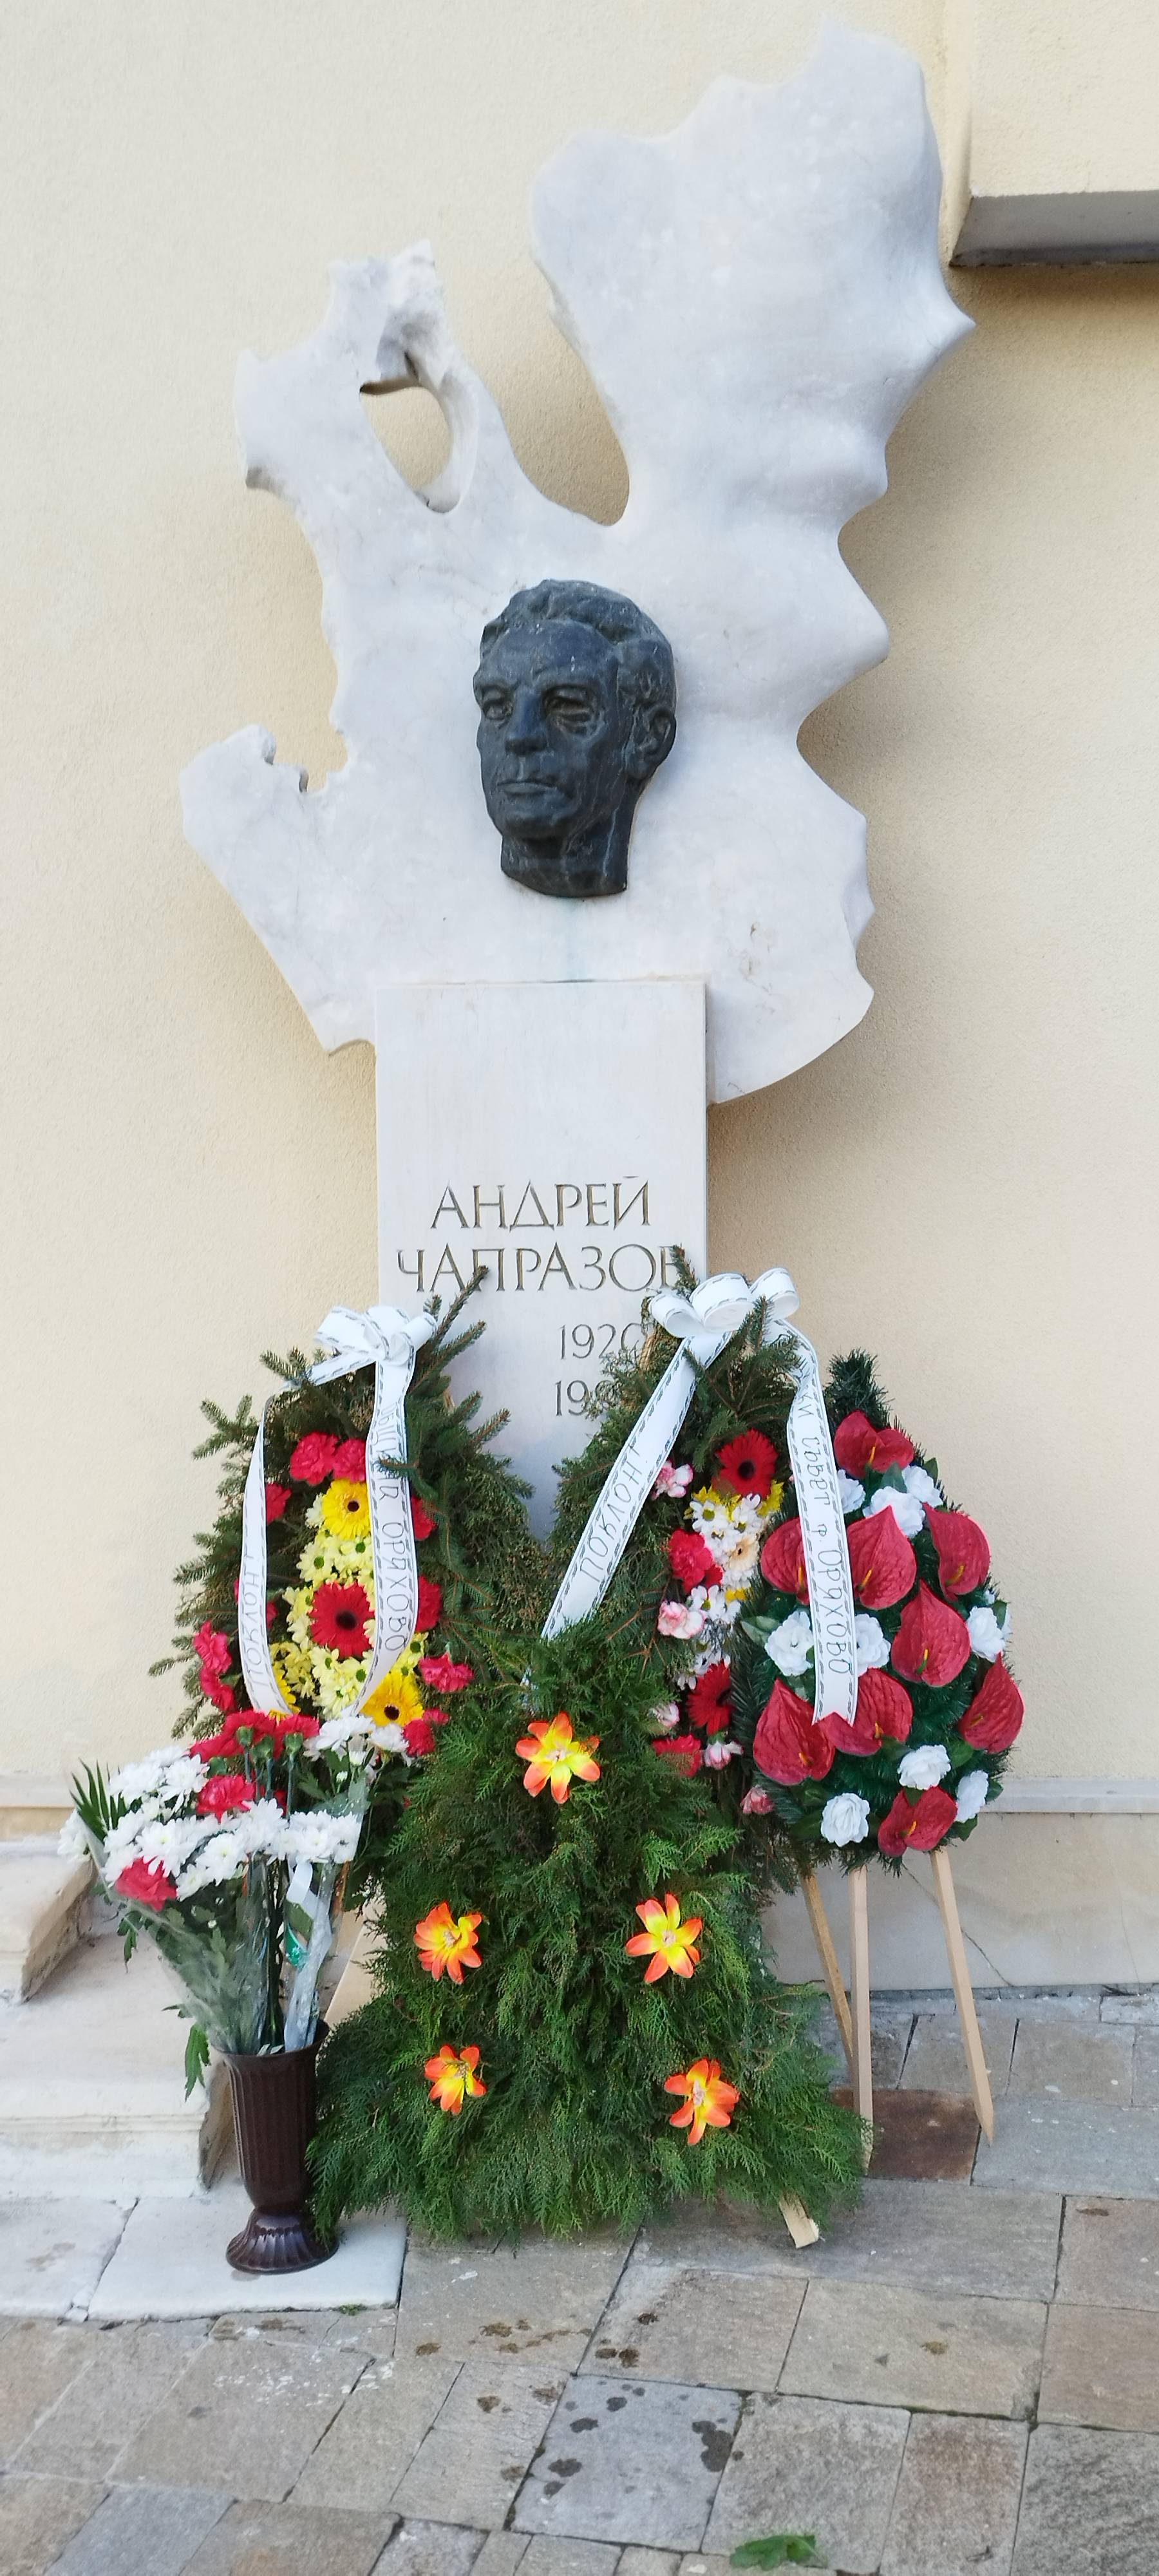 Цветя пред паметника на актьора Андрей Чапразов